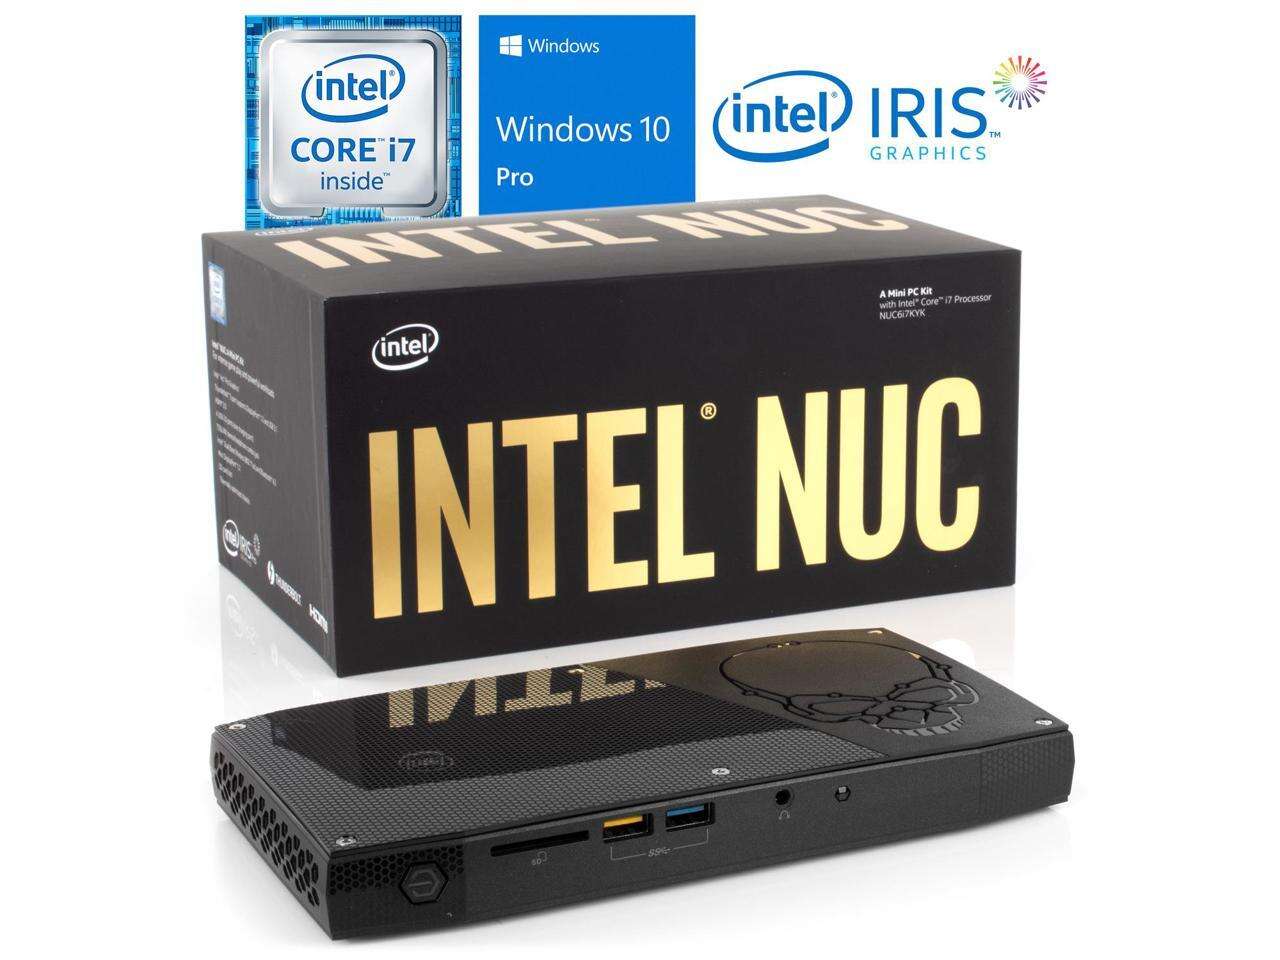 Intel NUC6i7KYK Mini PC, Intel Core i7-6770HQ Upto 3.5GHz, 16GB RAM, 512GB NVMe SSD, HDMI, Thunderbolt , Mini DisplayPort, Card Reader, Wi-Fi, Bluetooth, Windows 10 Pro